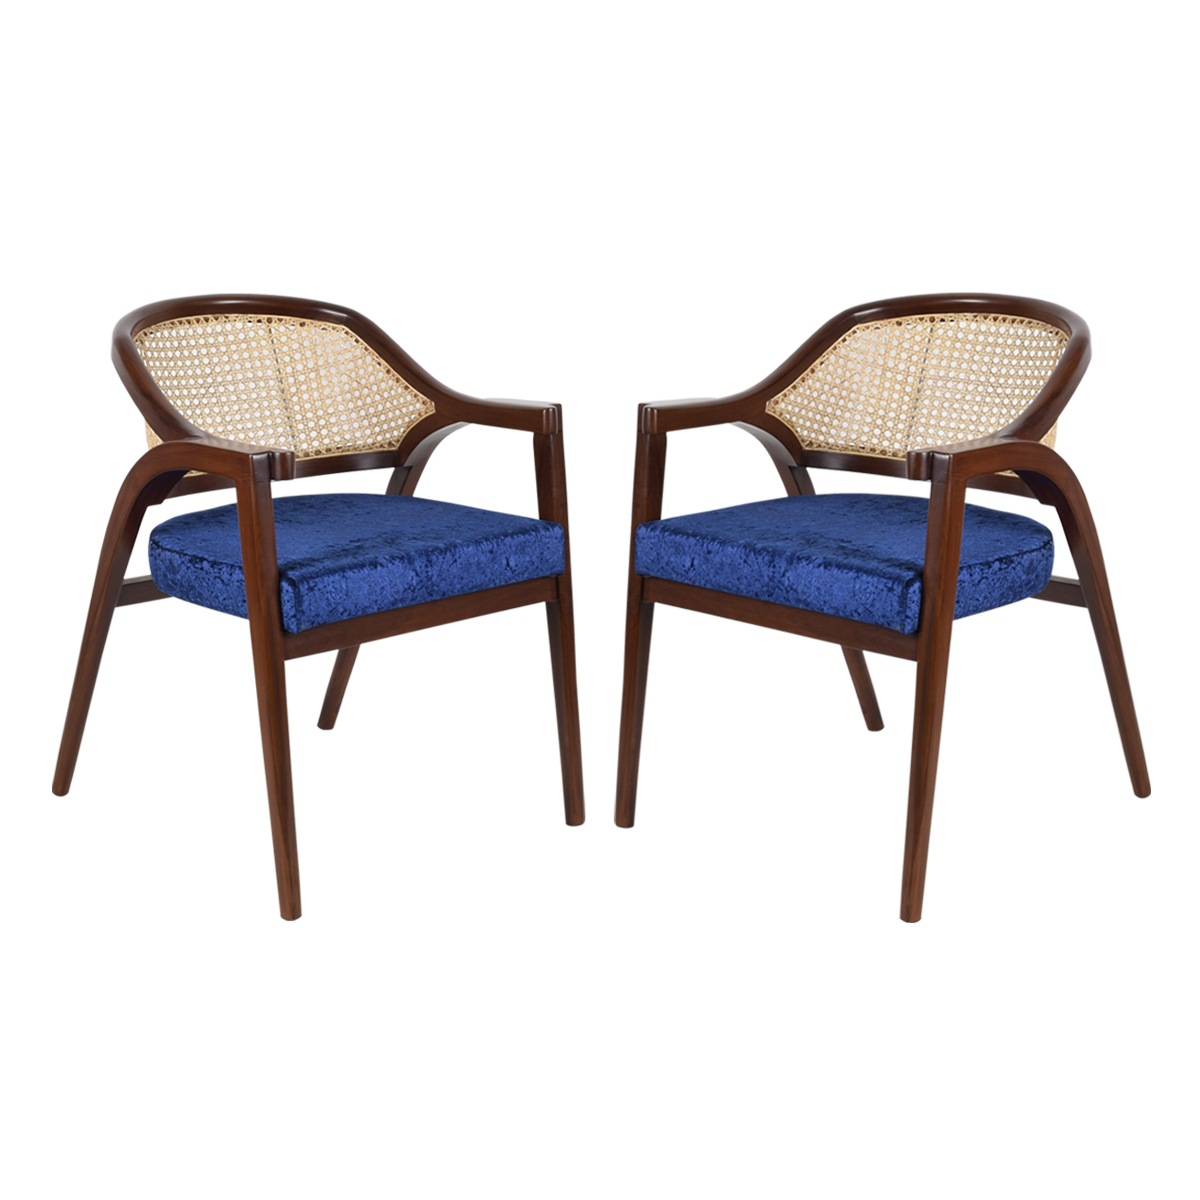 Bemla Teak Wood Arm Chair (Brown Blue)